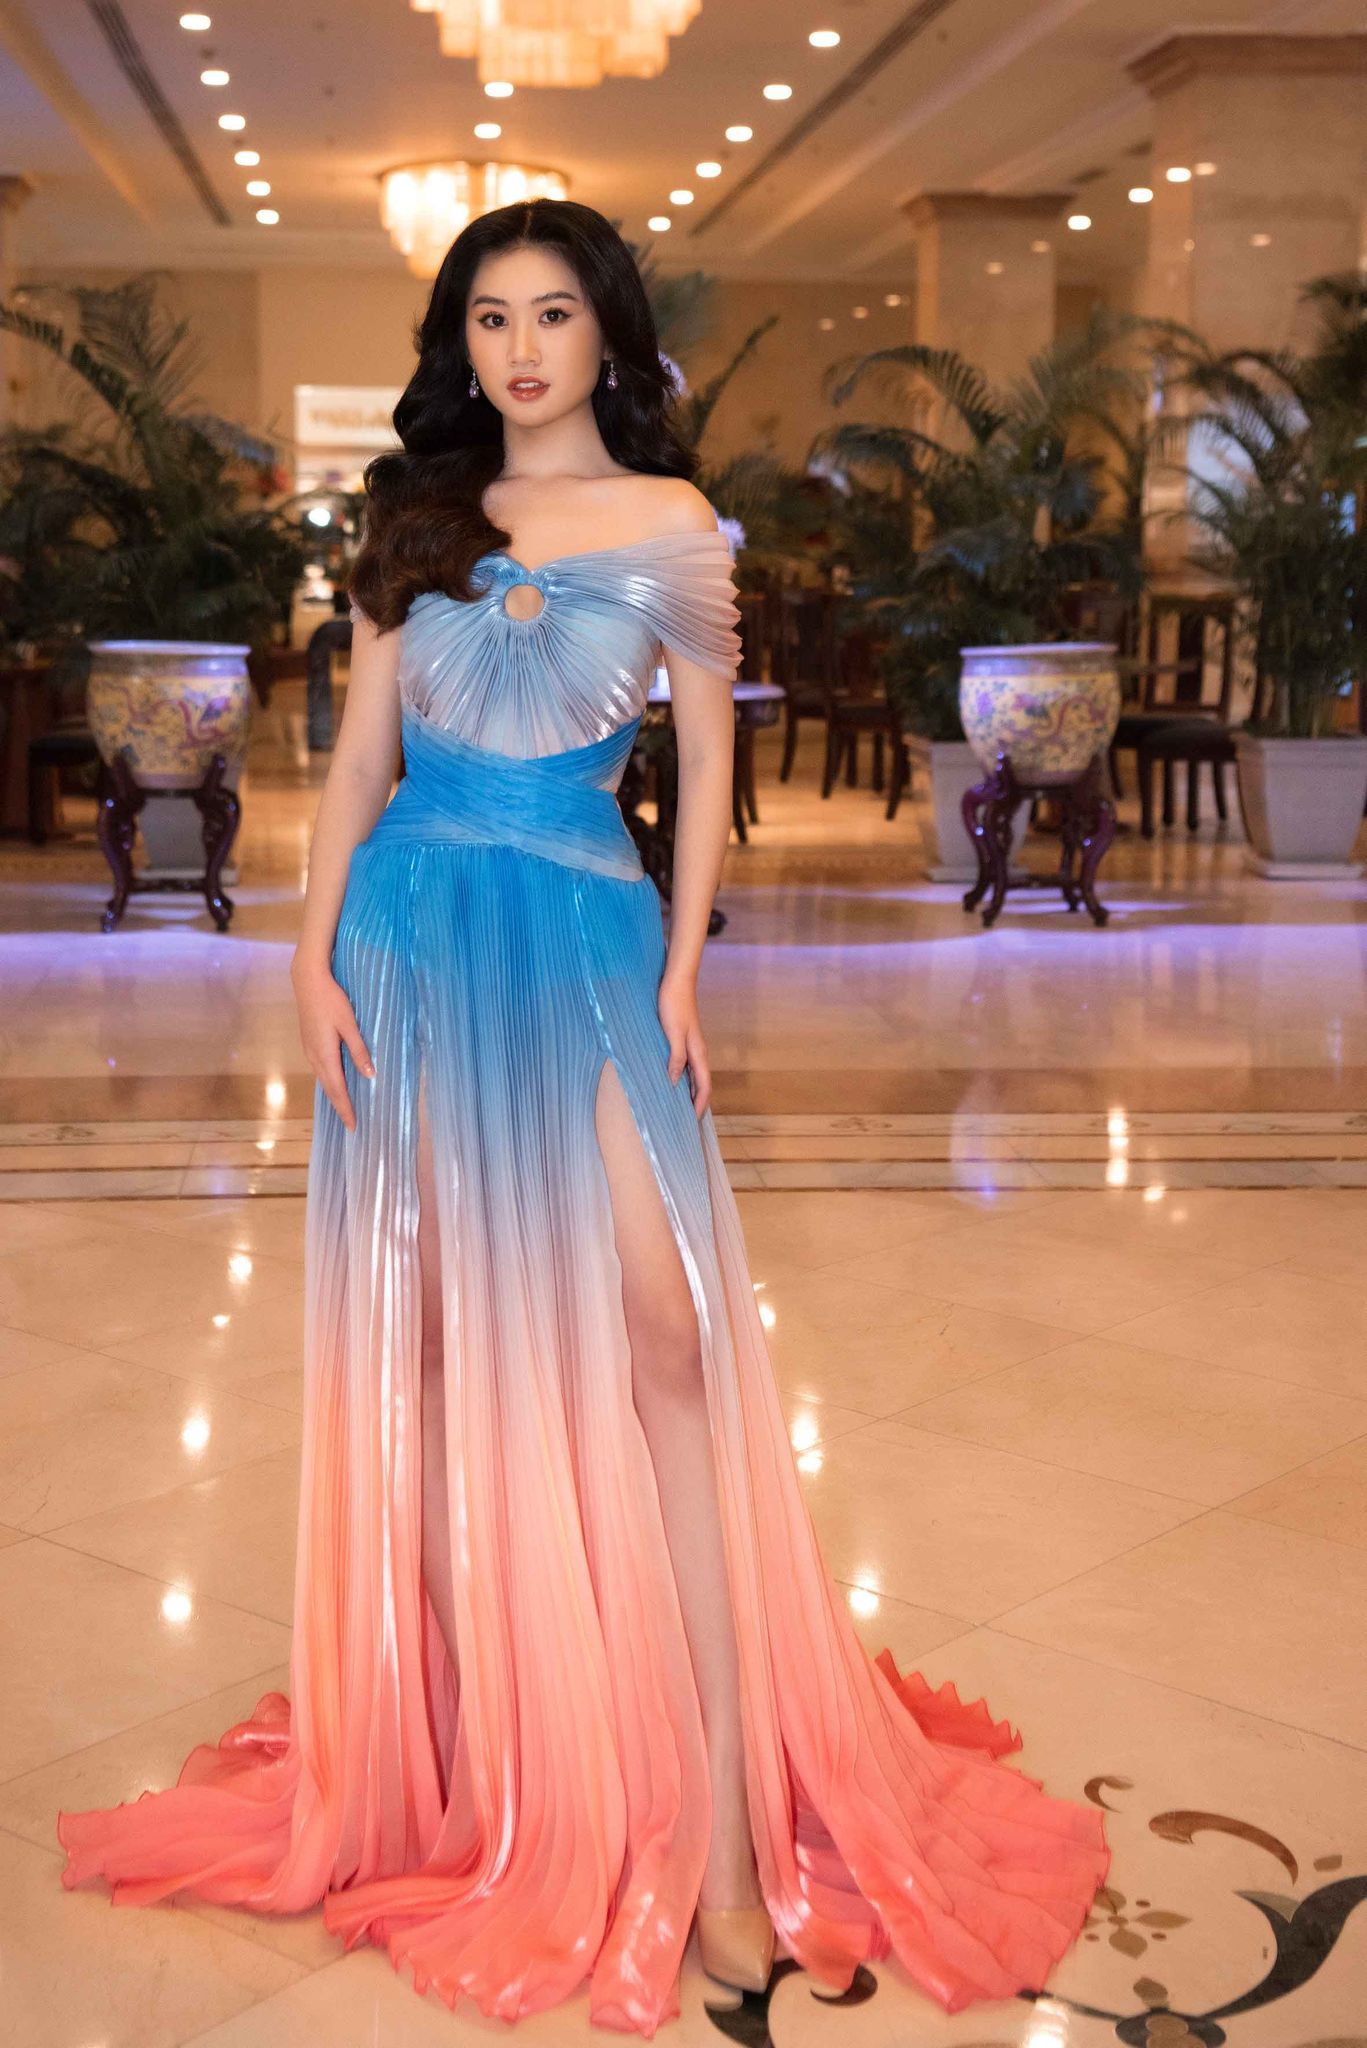 Hoàn cảnh ít biết của người đẹp 18 tuổi đạt Á hậu 2 Miss Eco Teen Vietnam 2021